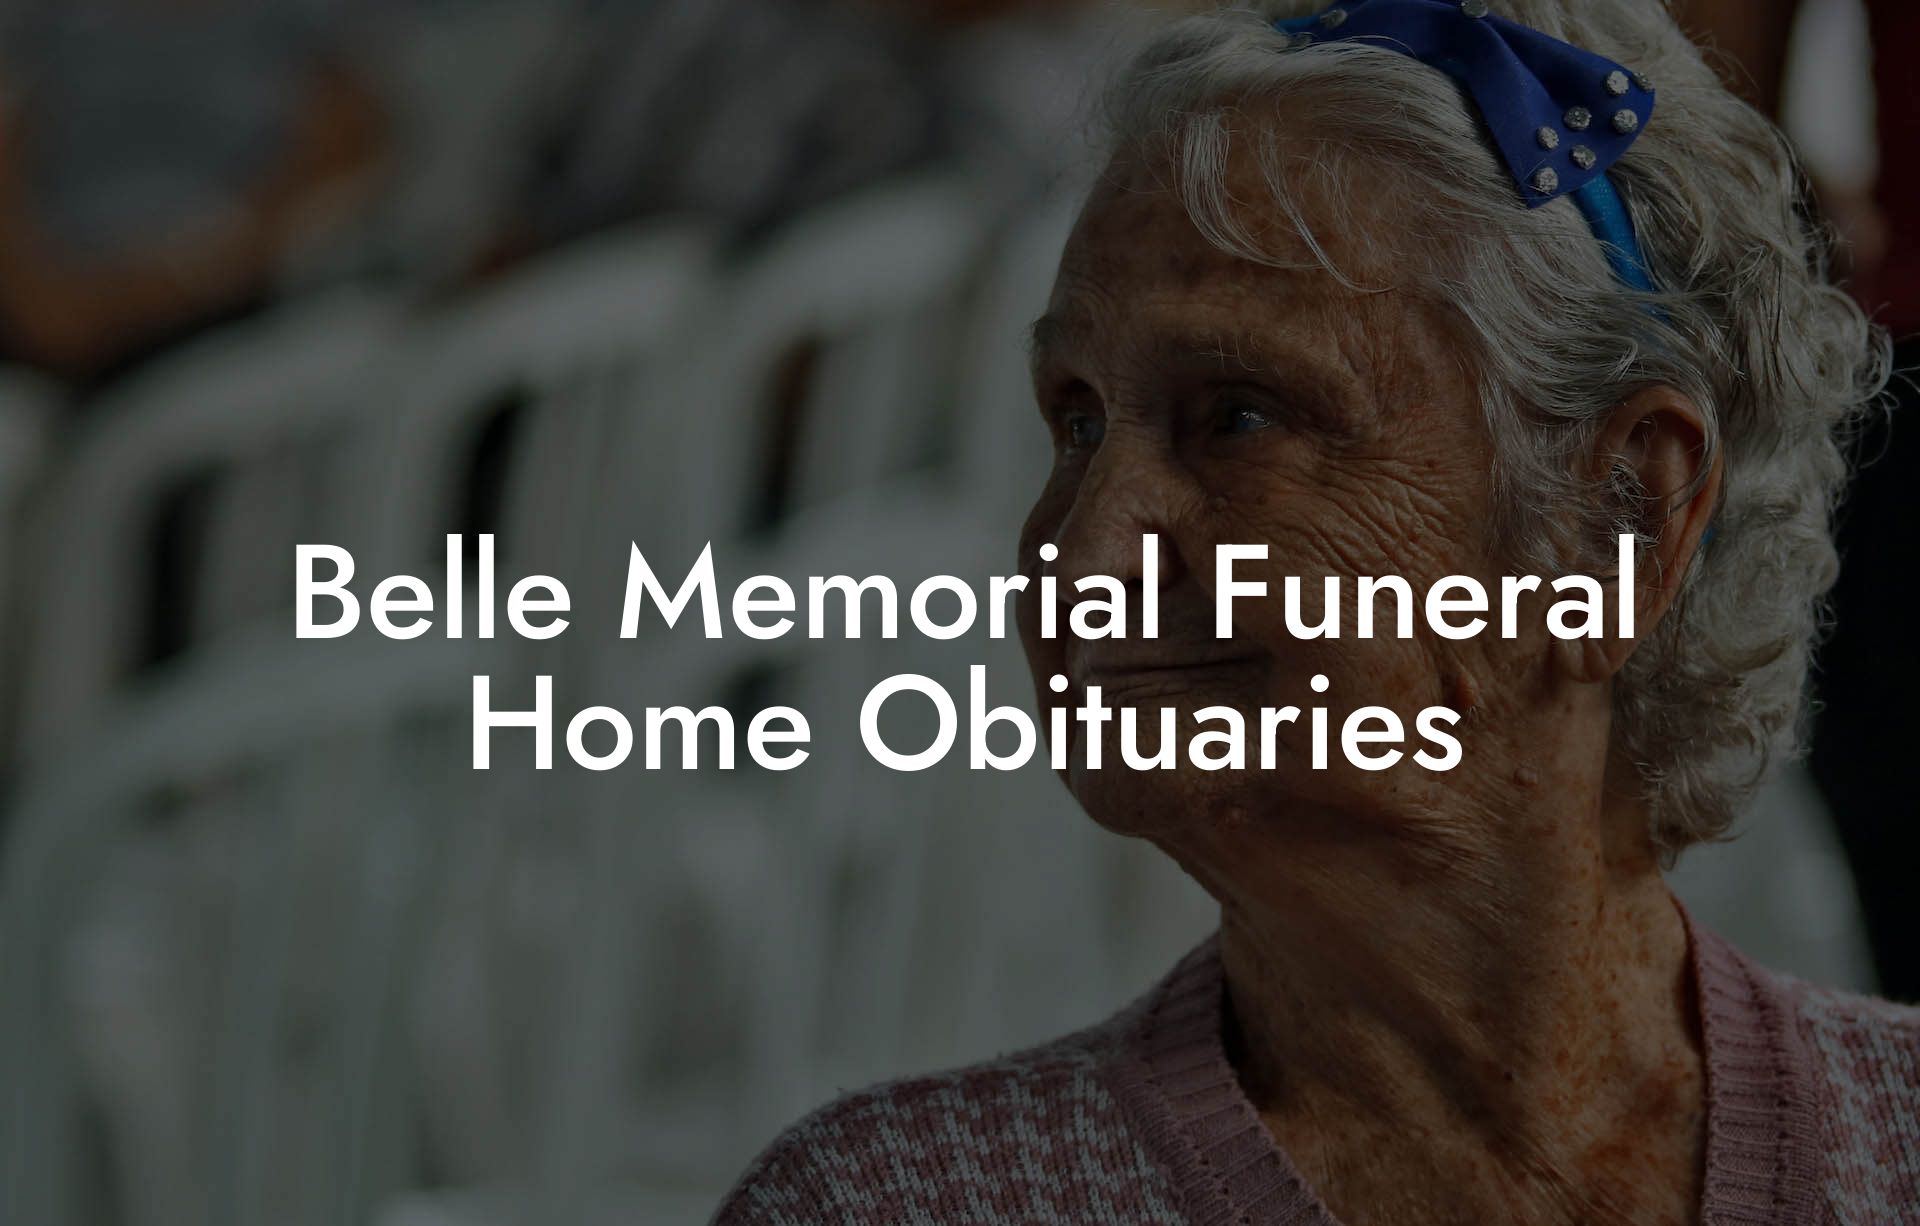 Belle Memorial Funeral Home Obituaries